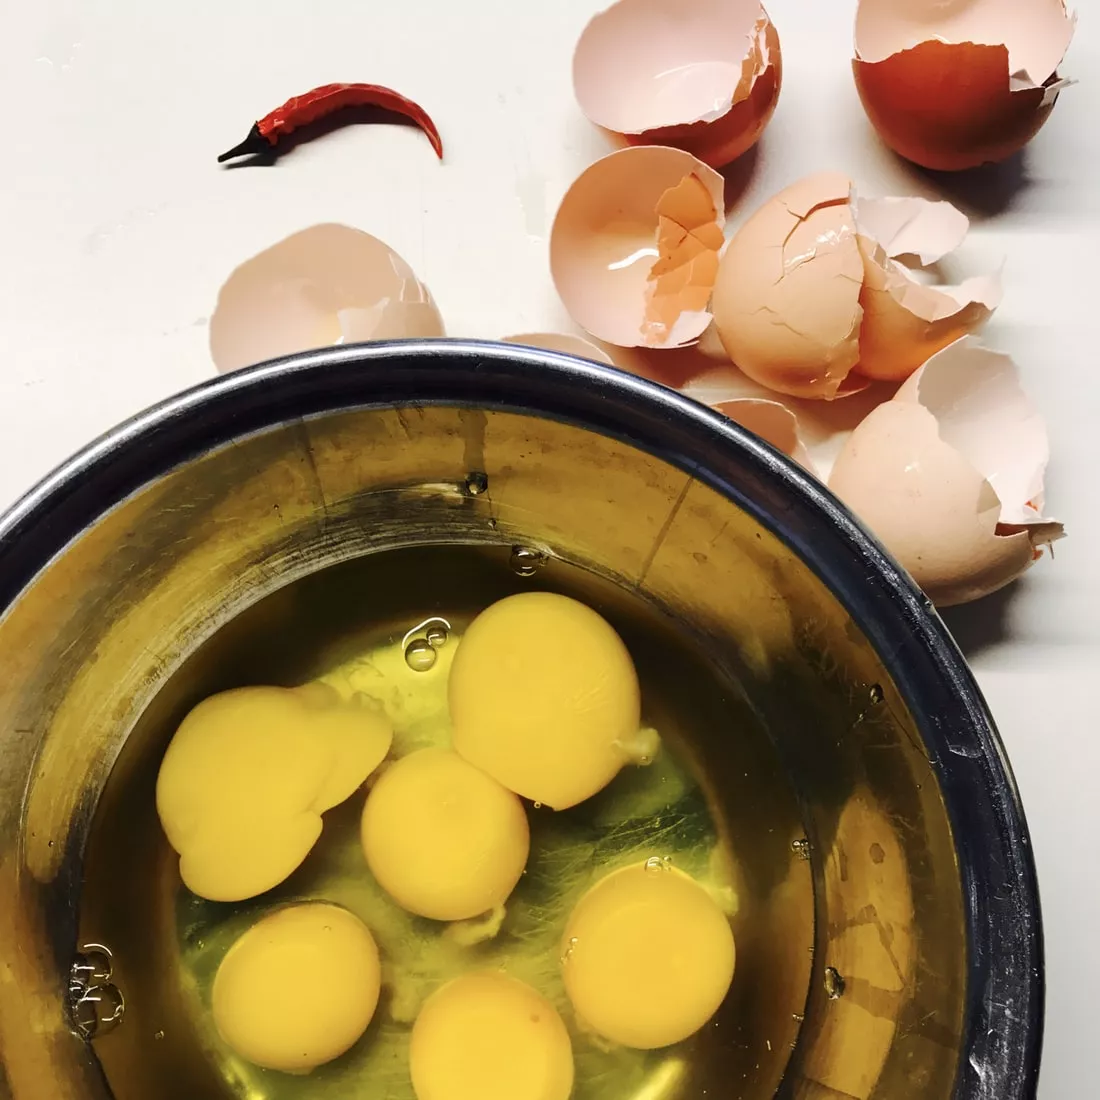 6 Raw Egg Yolks In A Bowl